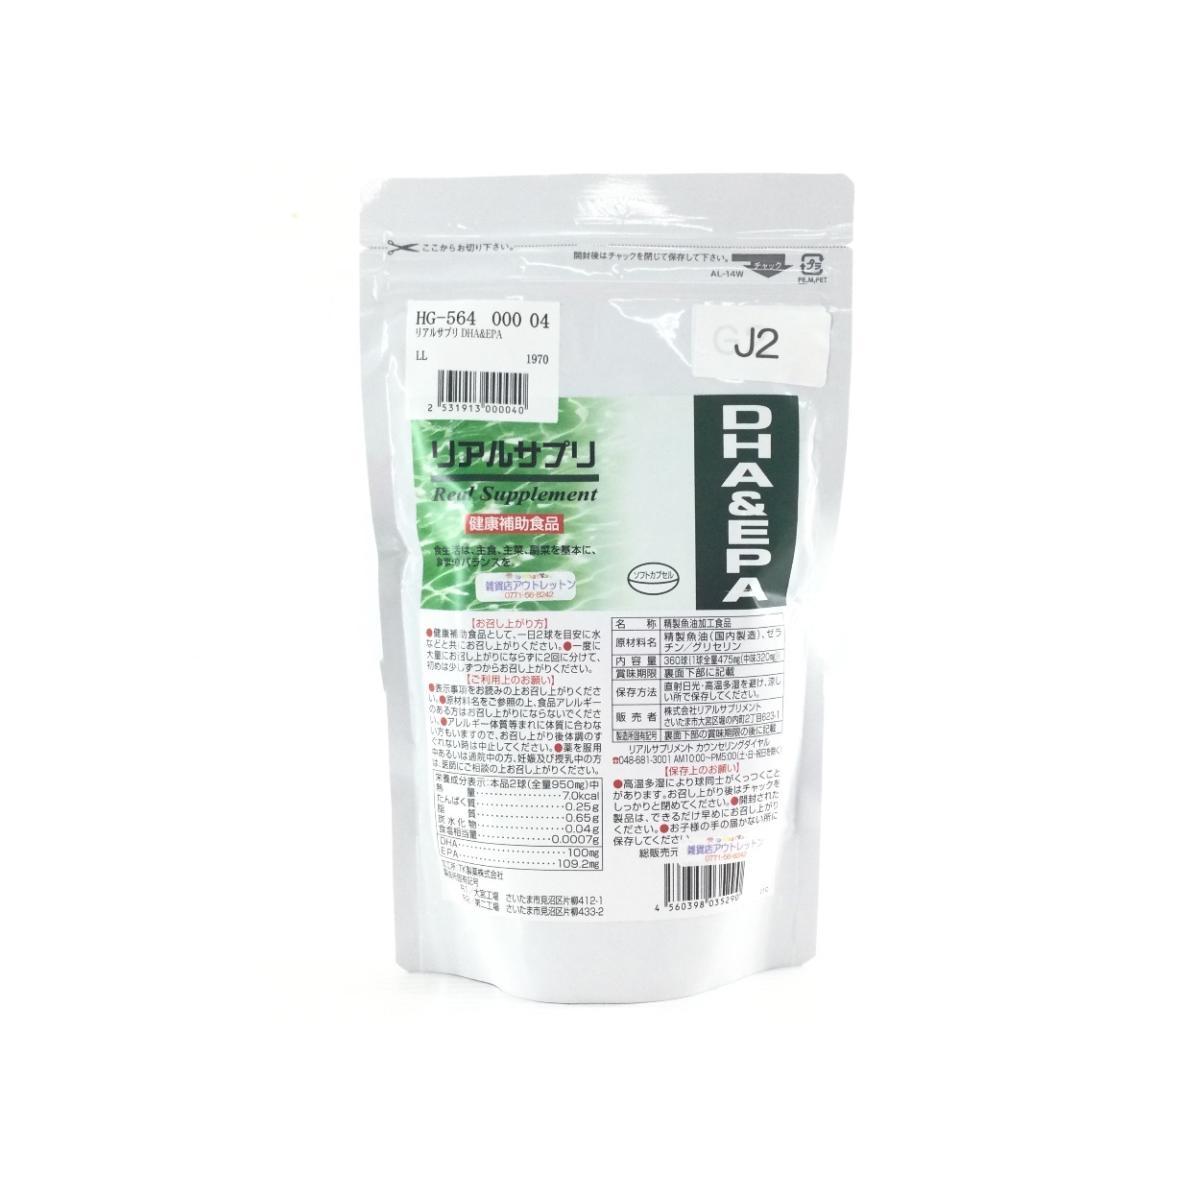  настоящий supplement DHA&EPA здоровье пассажирский еда soft Capsule примерно 180 день минут стоимость доставки 250 иен 